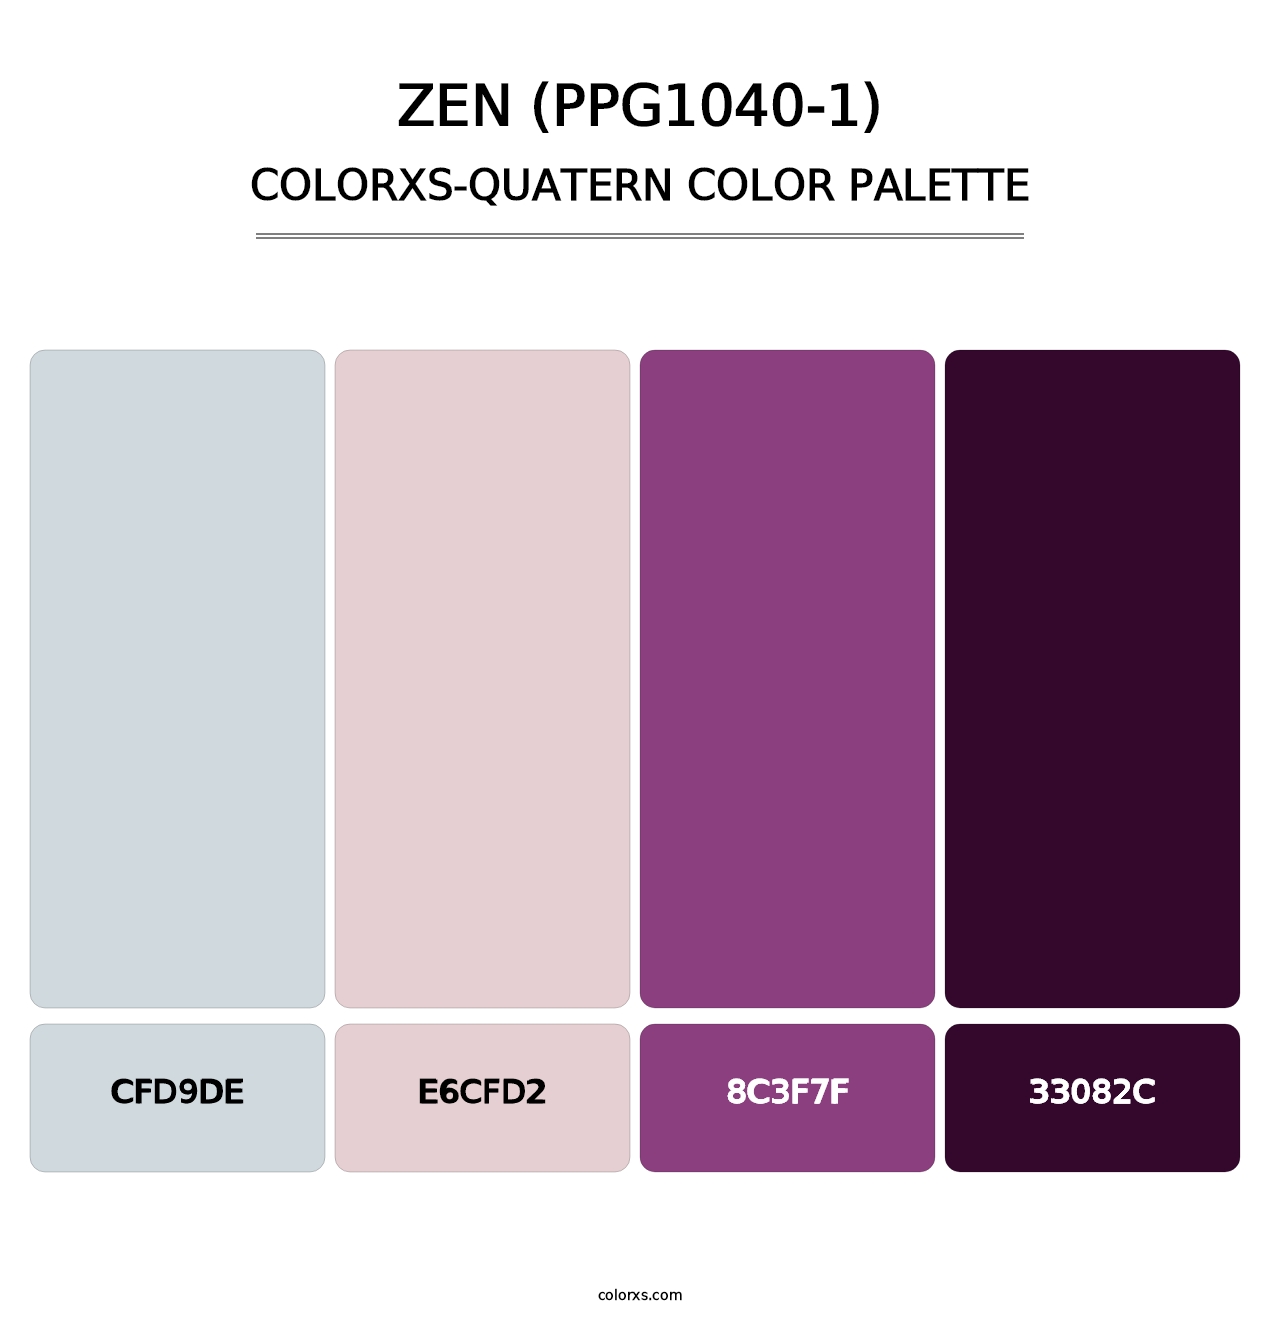 Zen (PPG1040-1) - Colorxs Quatern Palette